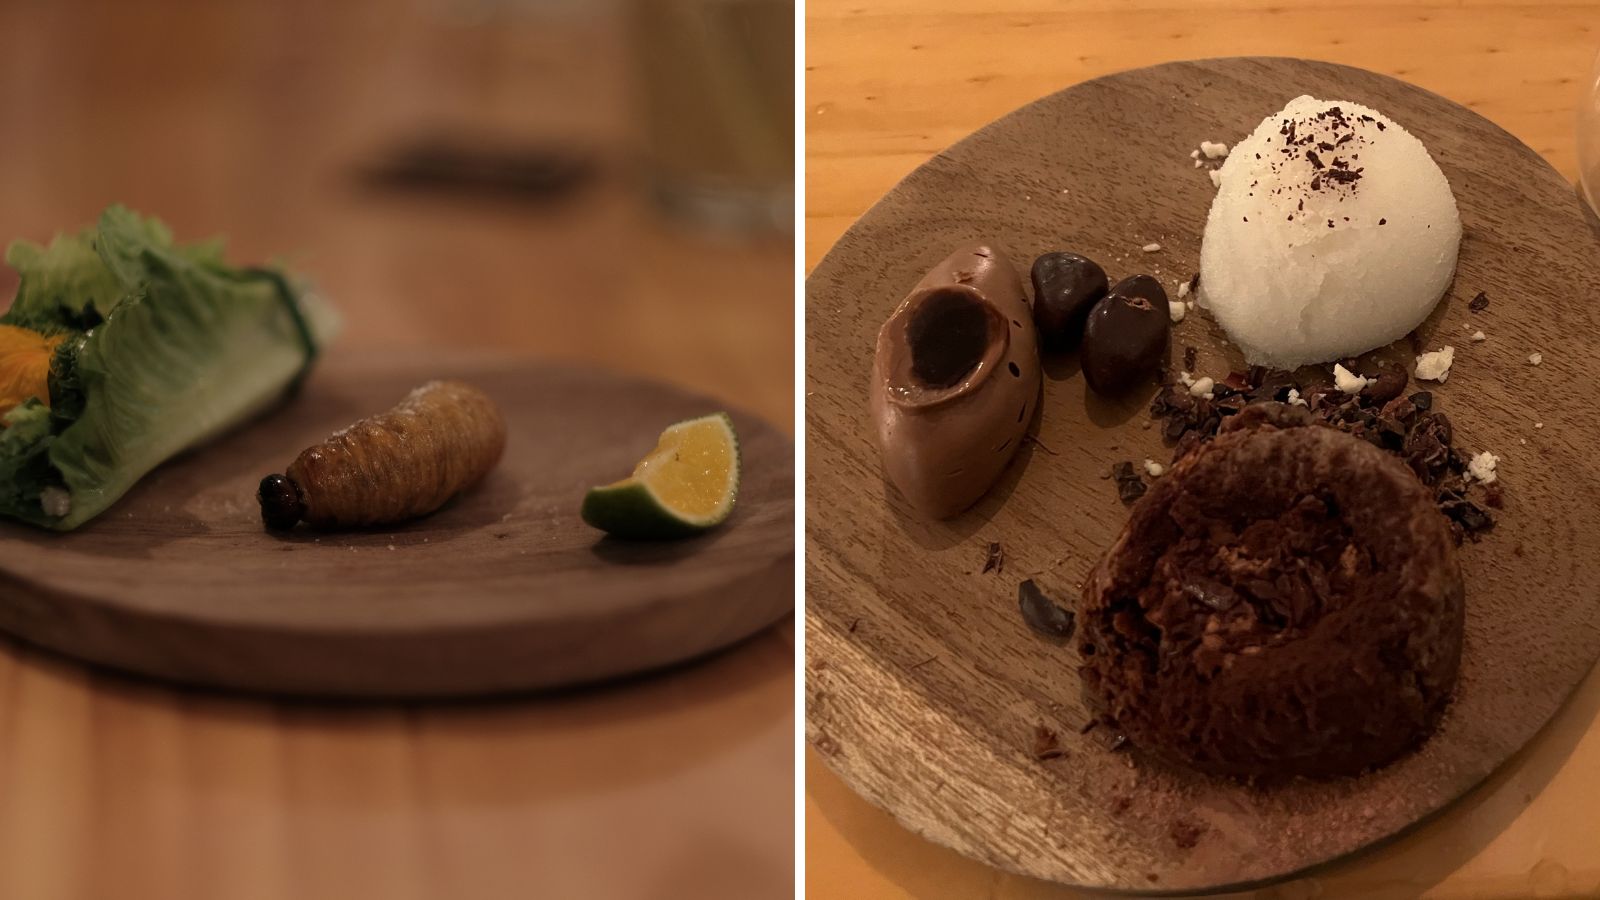 Links: krokant gebakken larve | rechts: dessert op basis van Ecuadoriaanse cacao